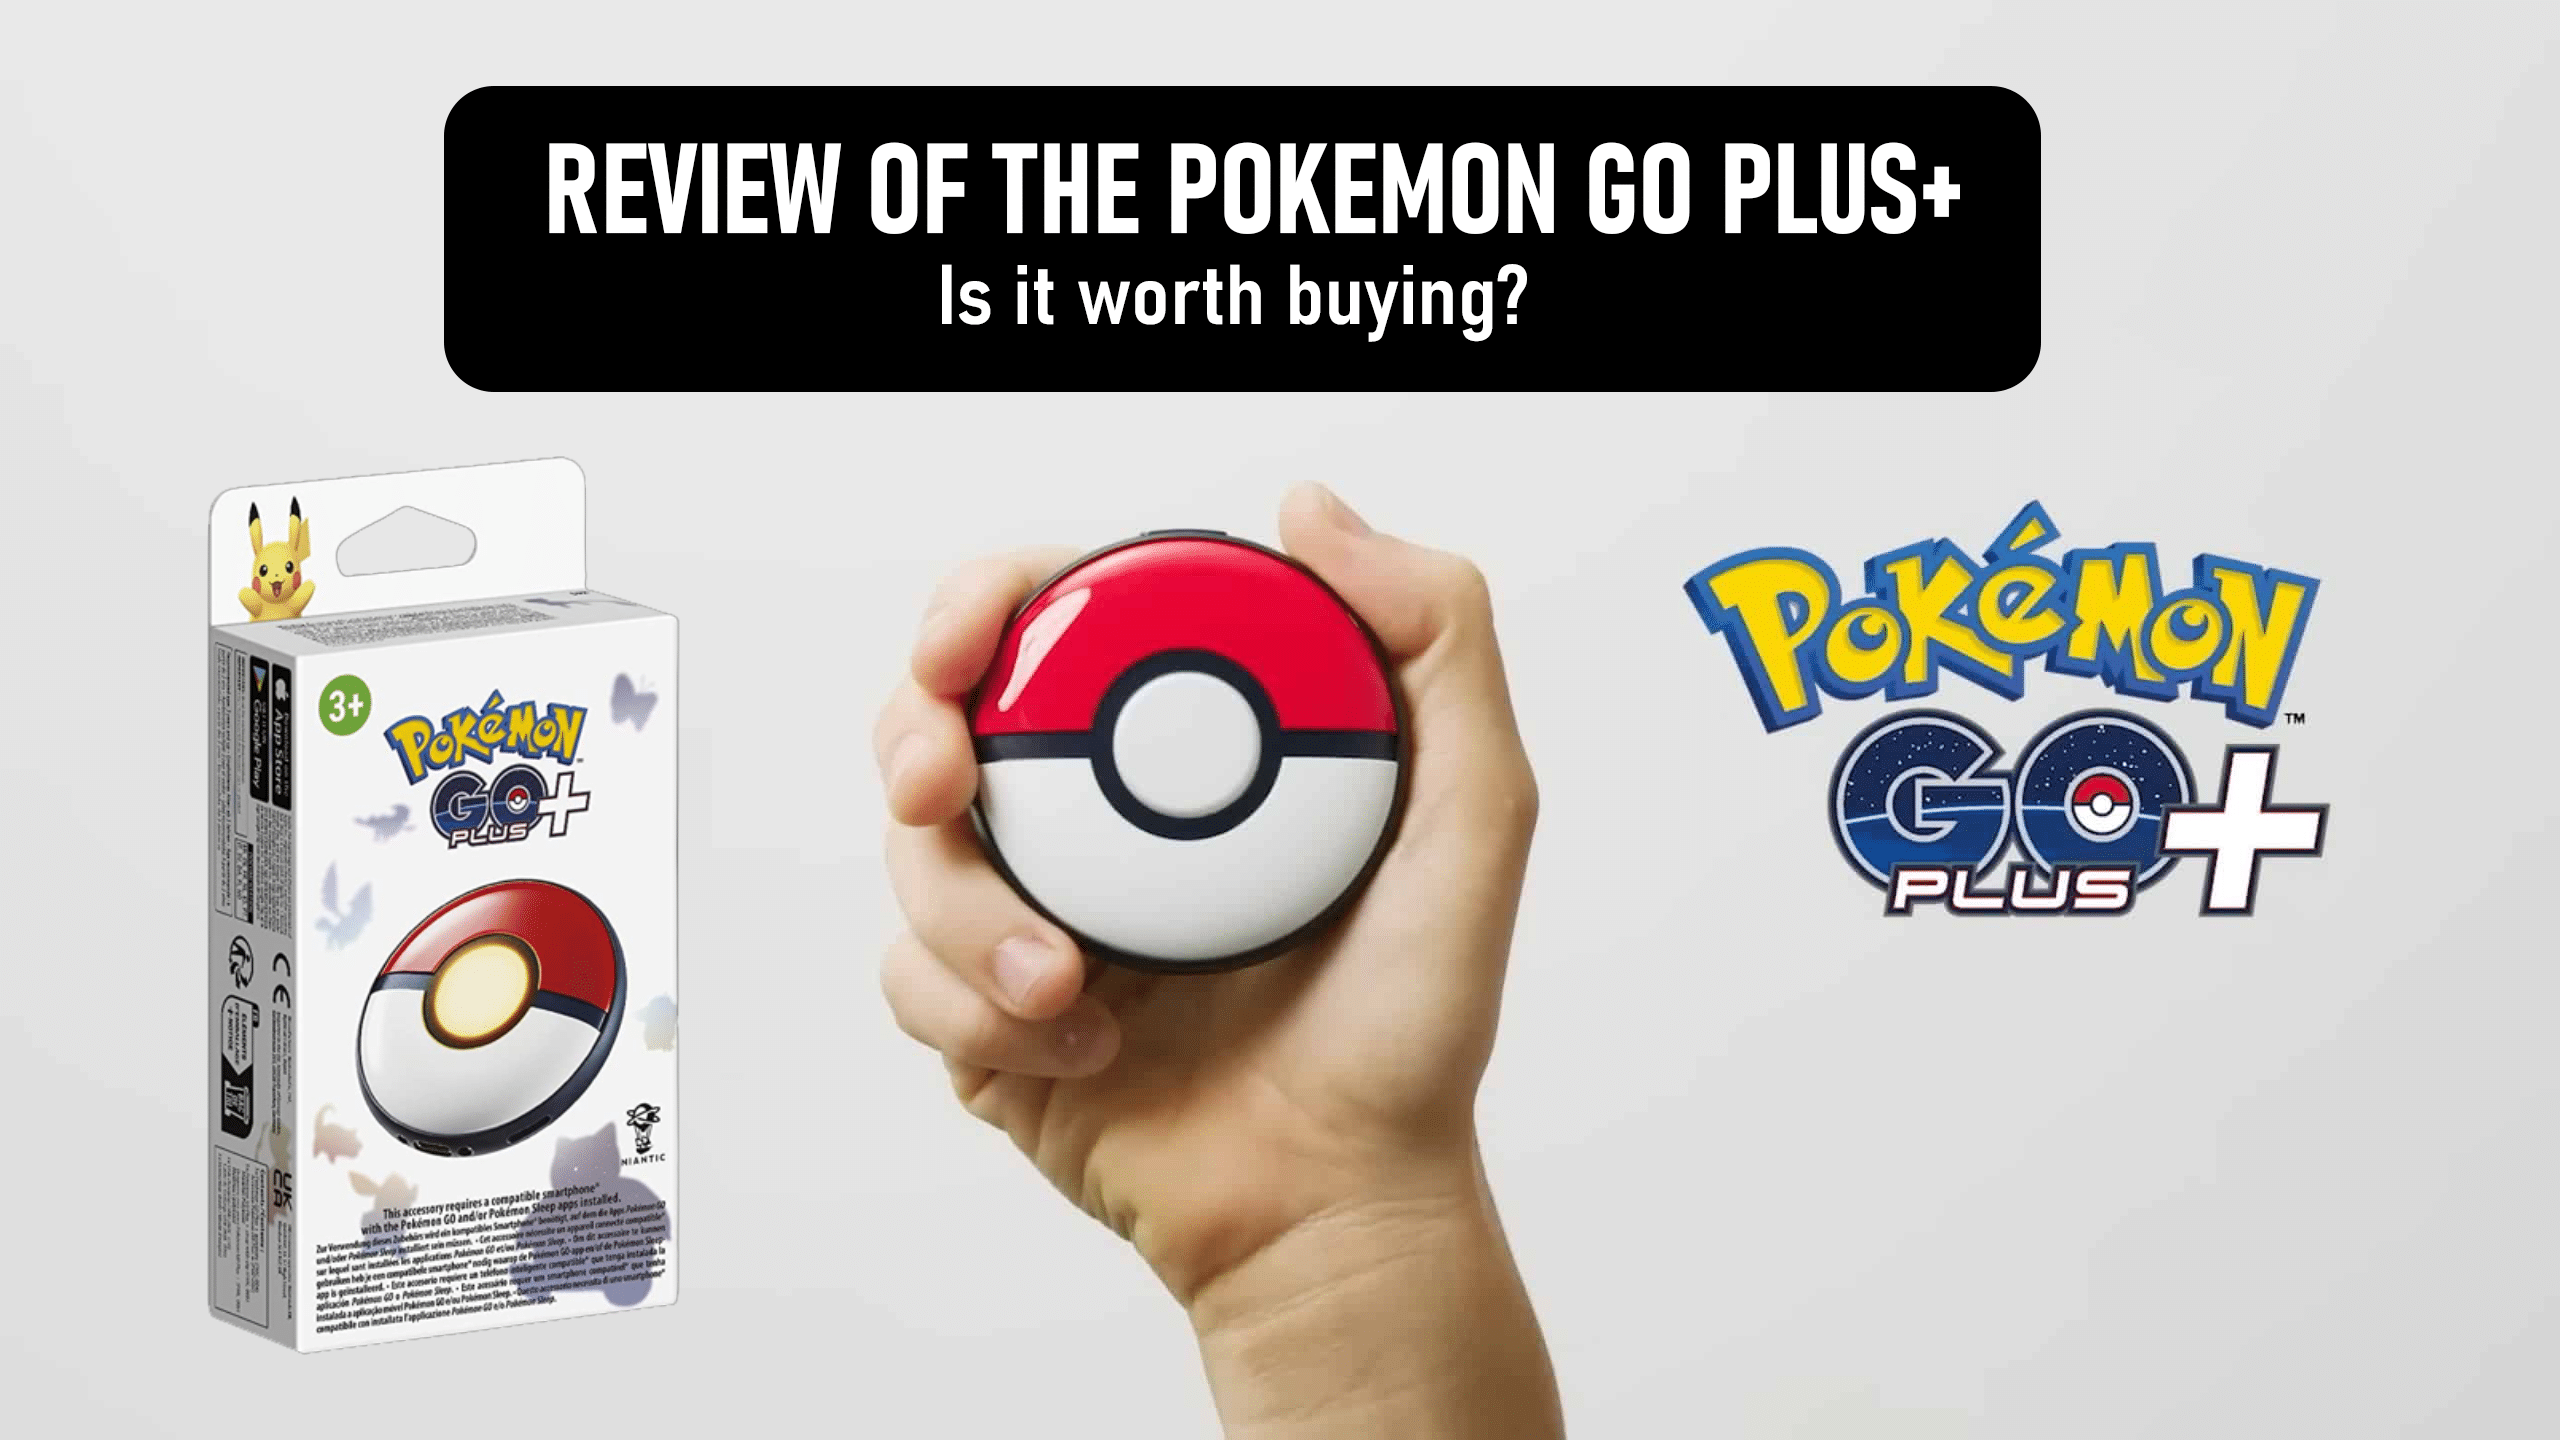 Nintendo Pokemon Go Plus+ (5 stores) see prices now »